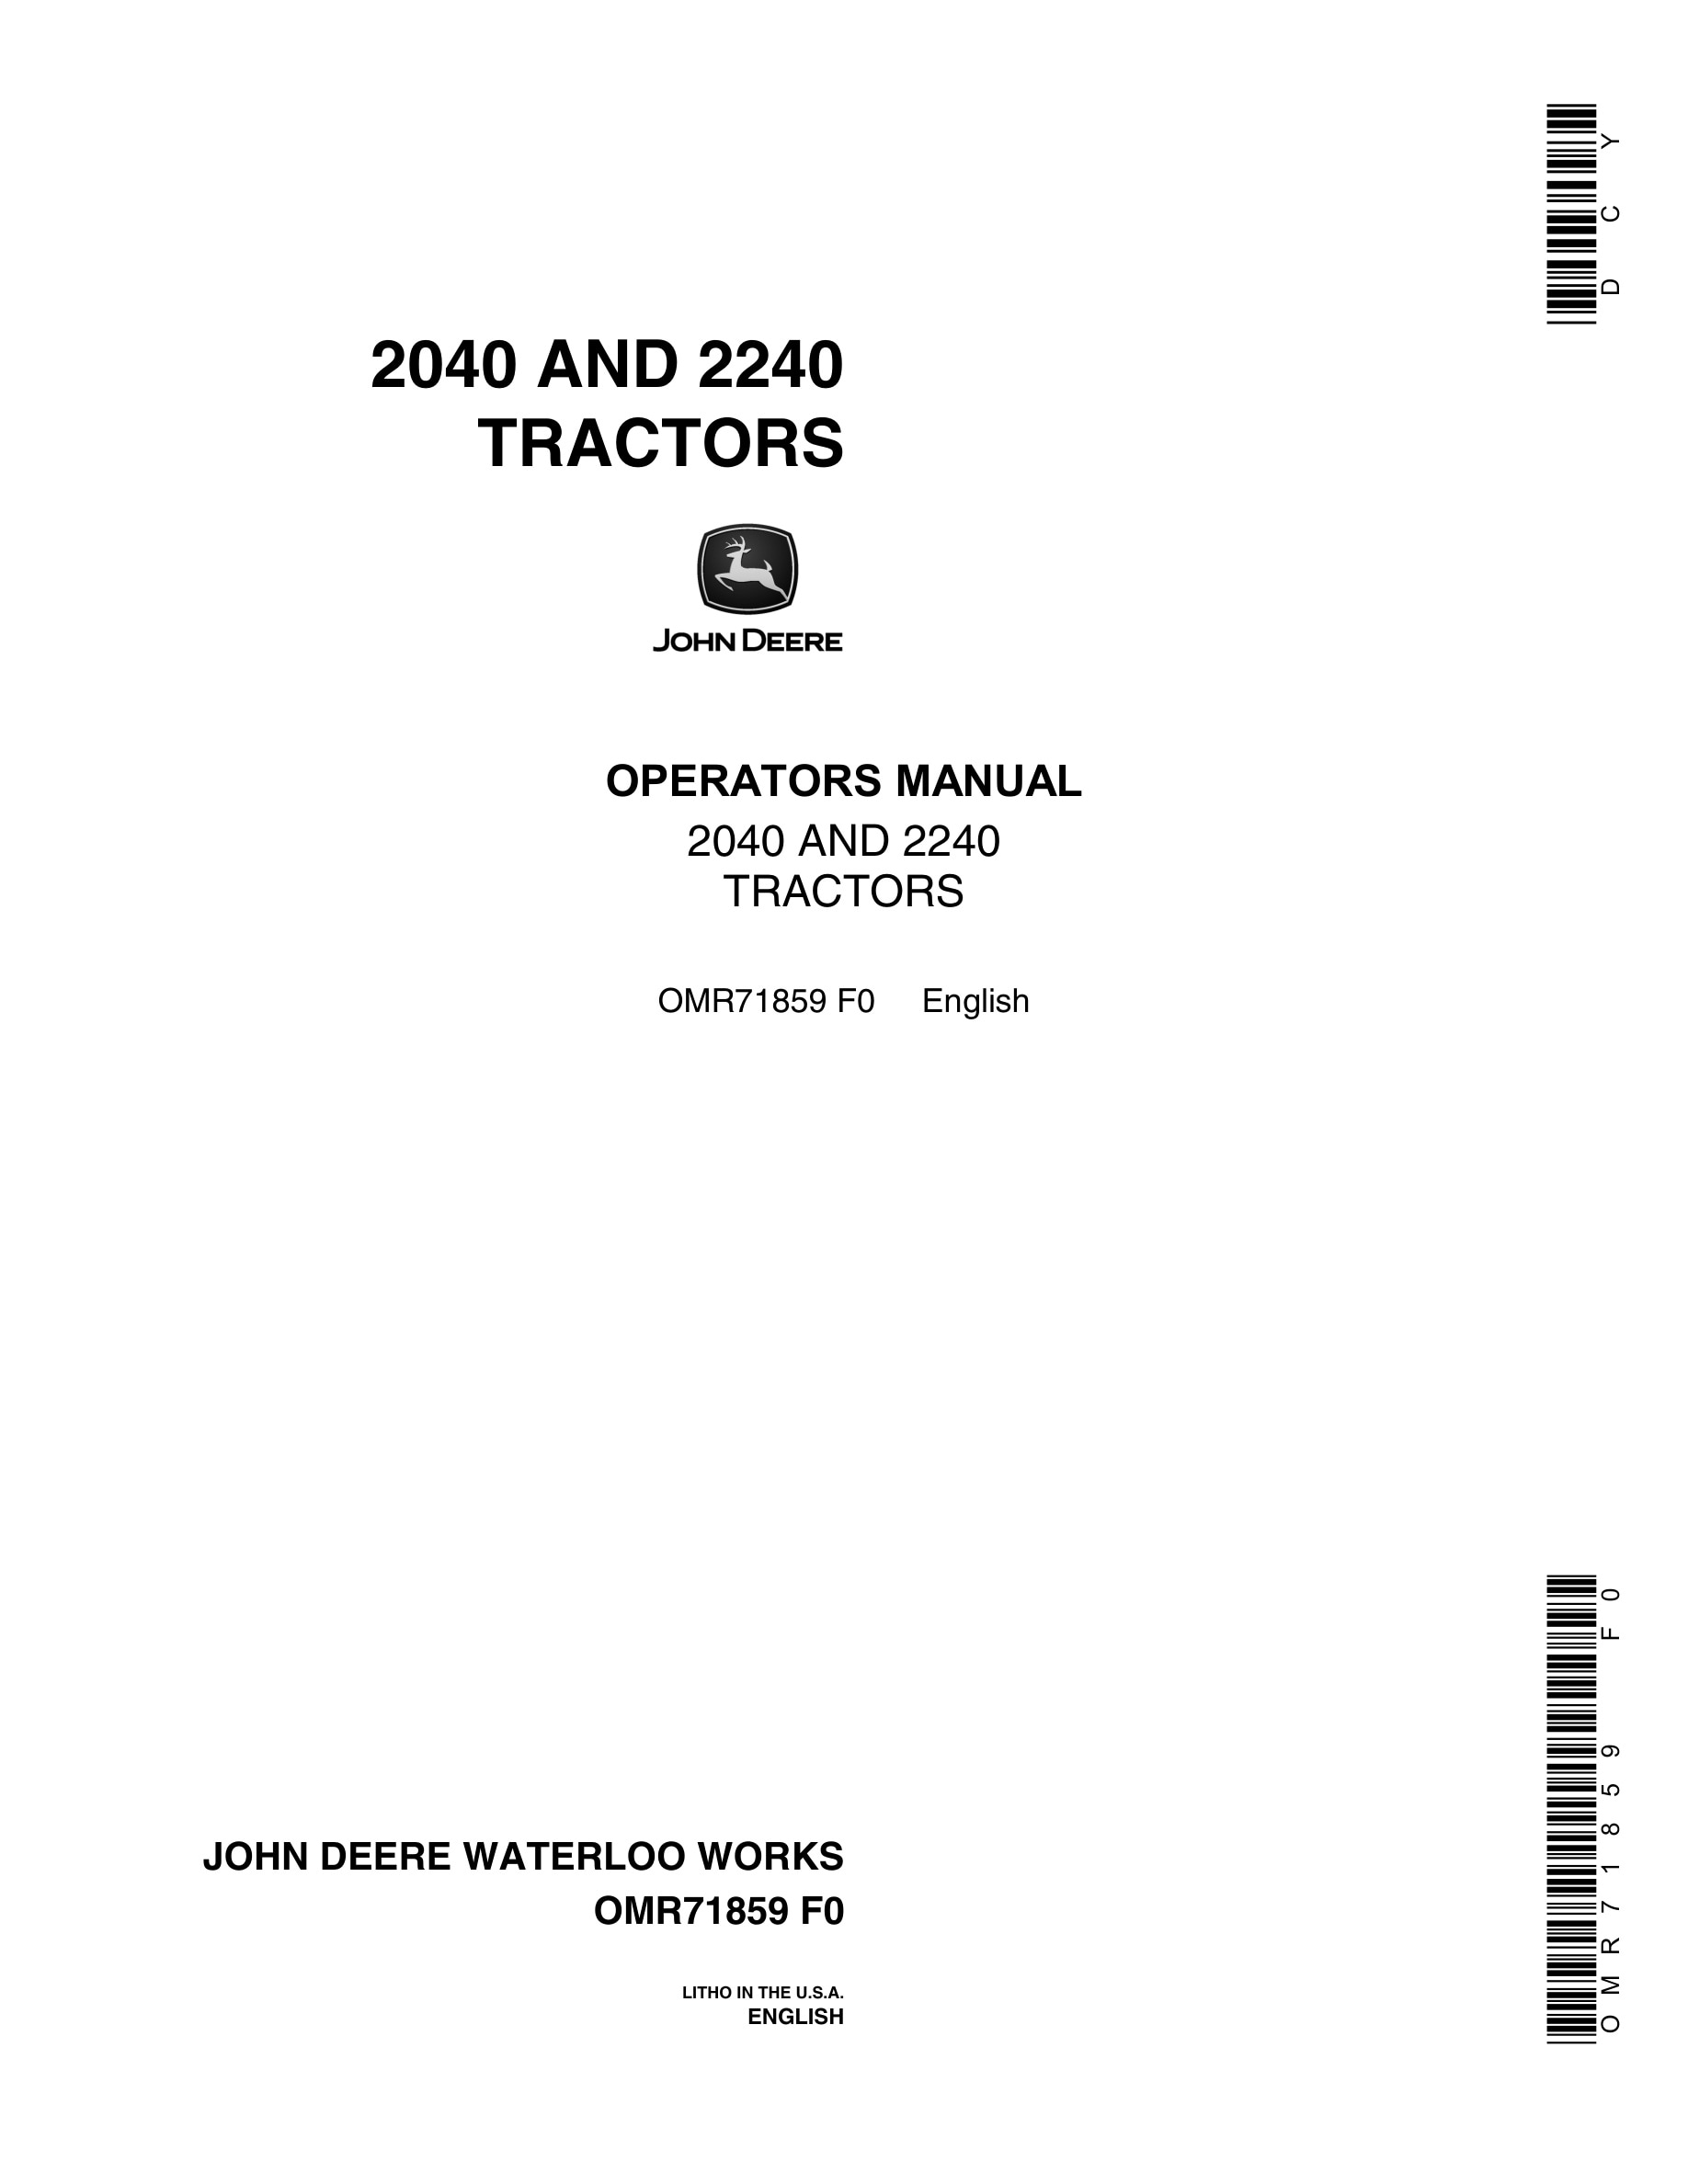 John Deere 2040 AND 2240 Tractor Operator Manual OMR71859-1